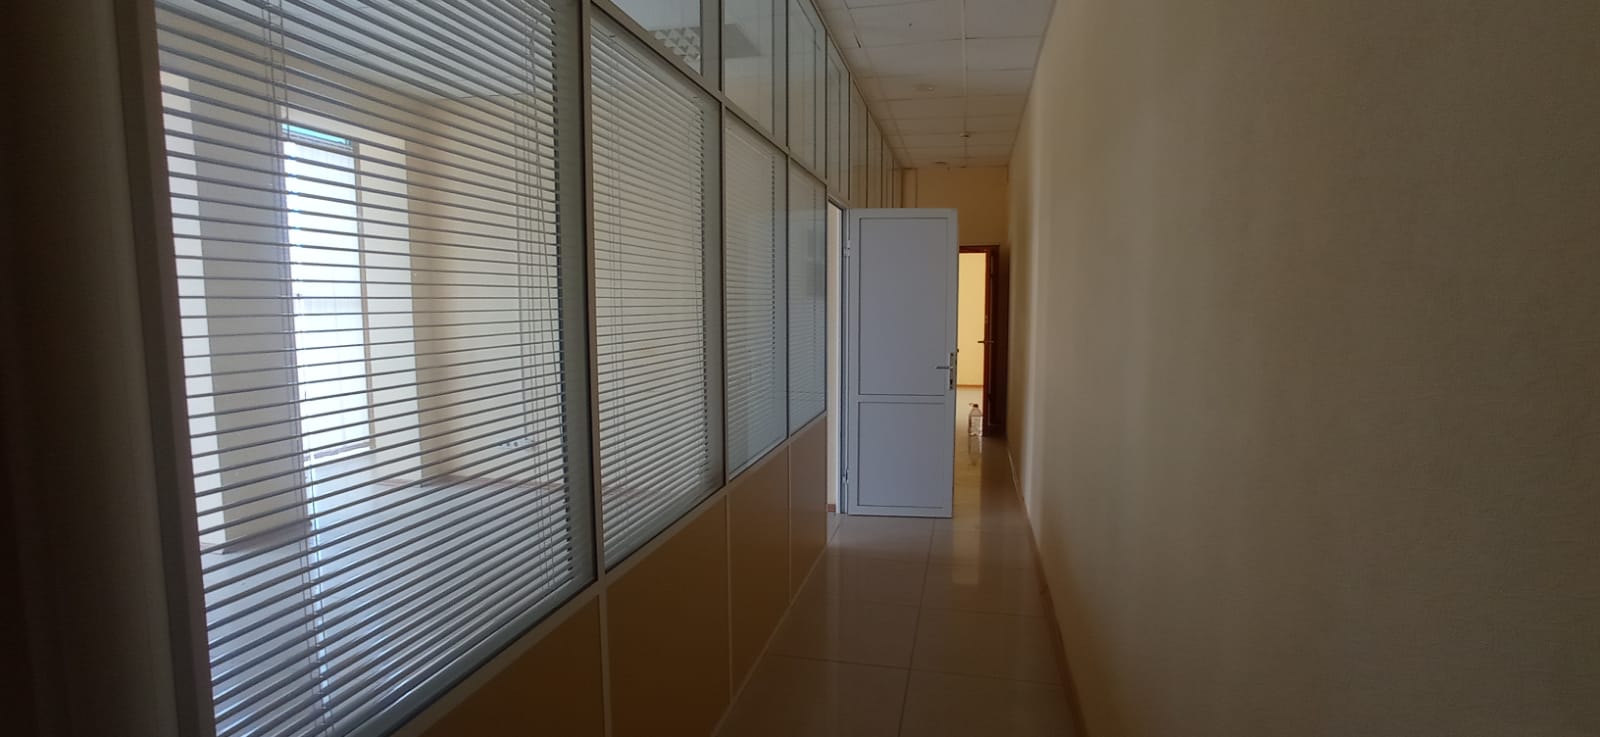 Предлагаем к аренде офисные помещения в  центре г.Армавир площадью от 17 м² до 20 м² на 2-ом этаже, по ул. Комсомольская напрямую от собственника._11